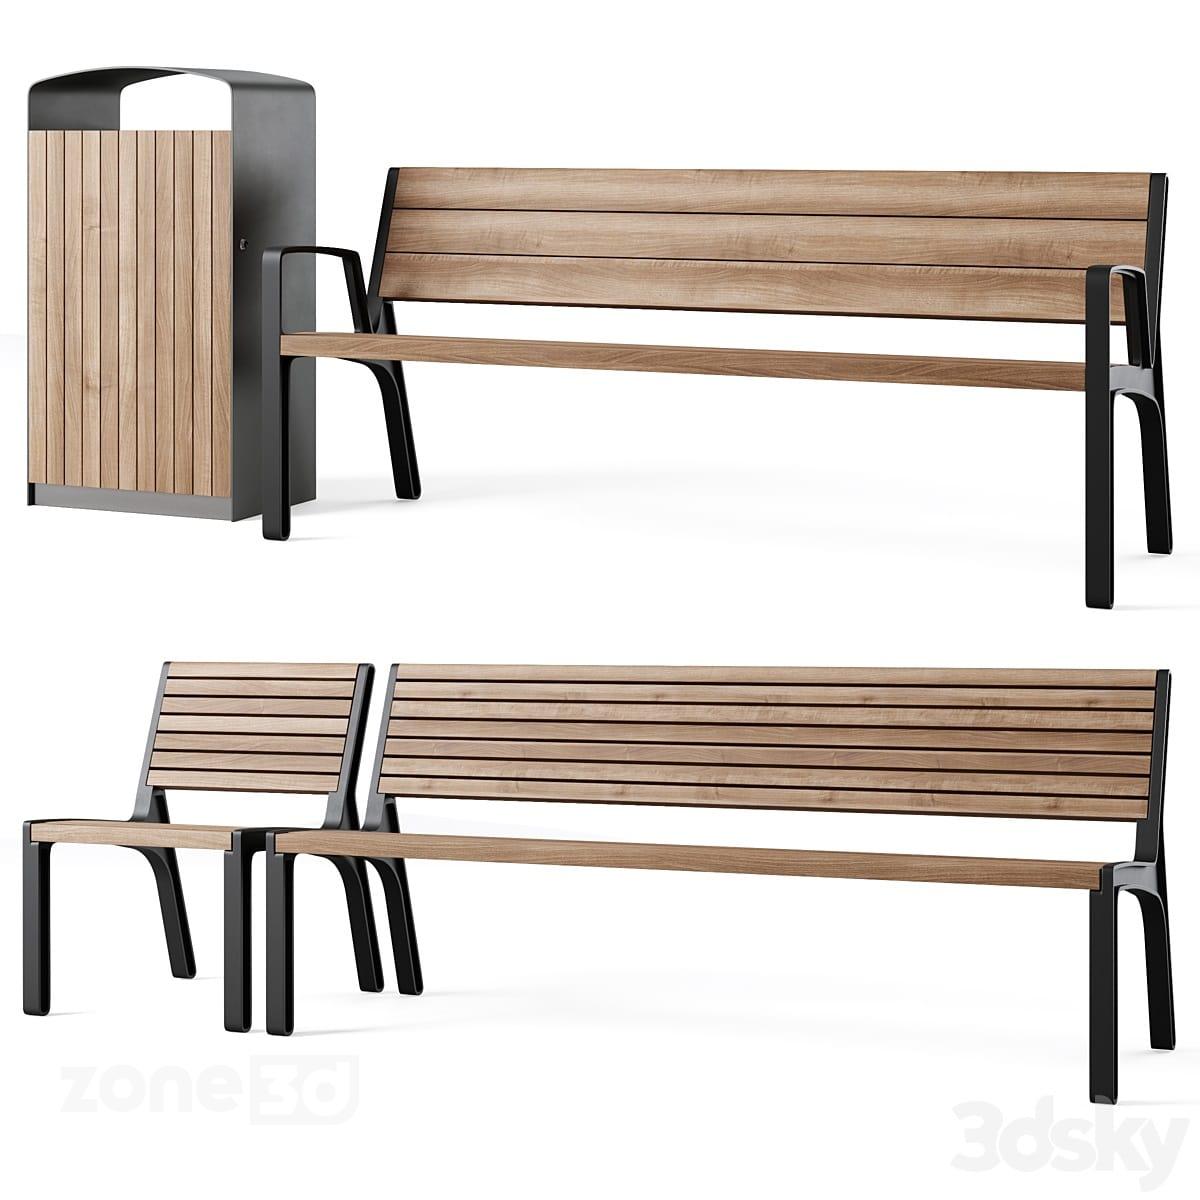 آبجکت ست صندلی و نیمکت مدرن چوبی و فلزی به همراه سطل زباله برای محیط شهری Miela